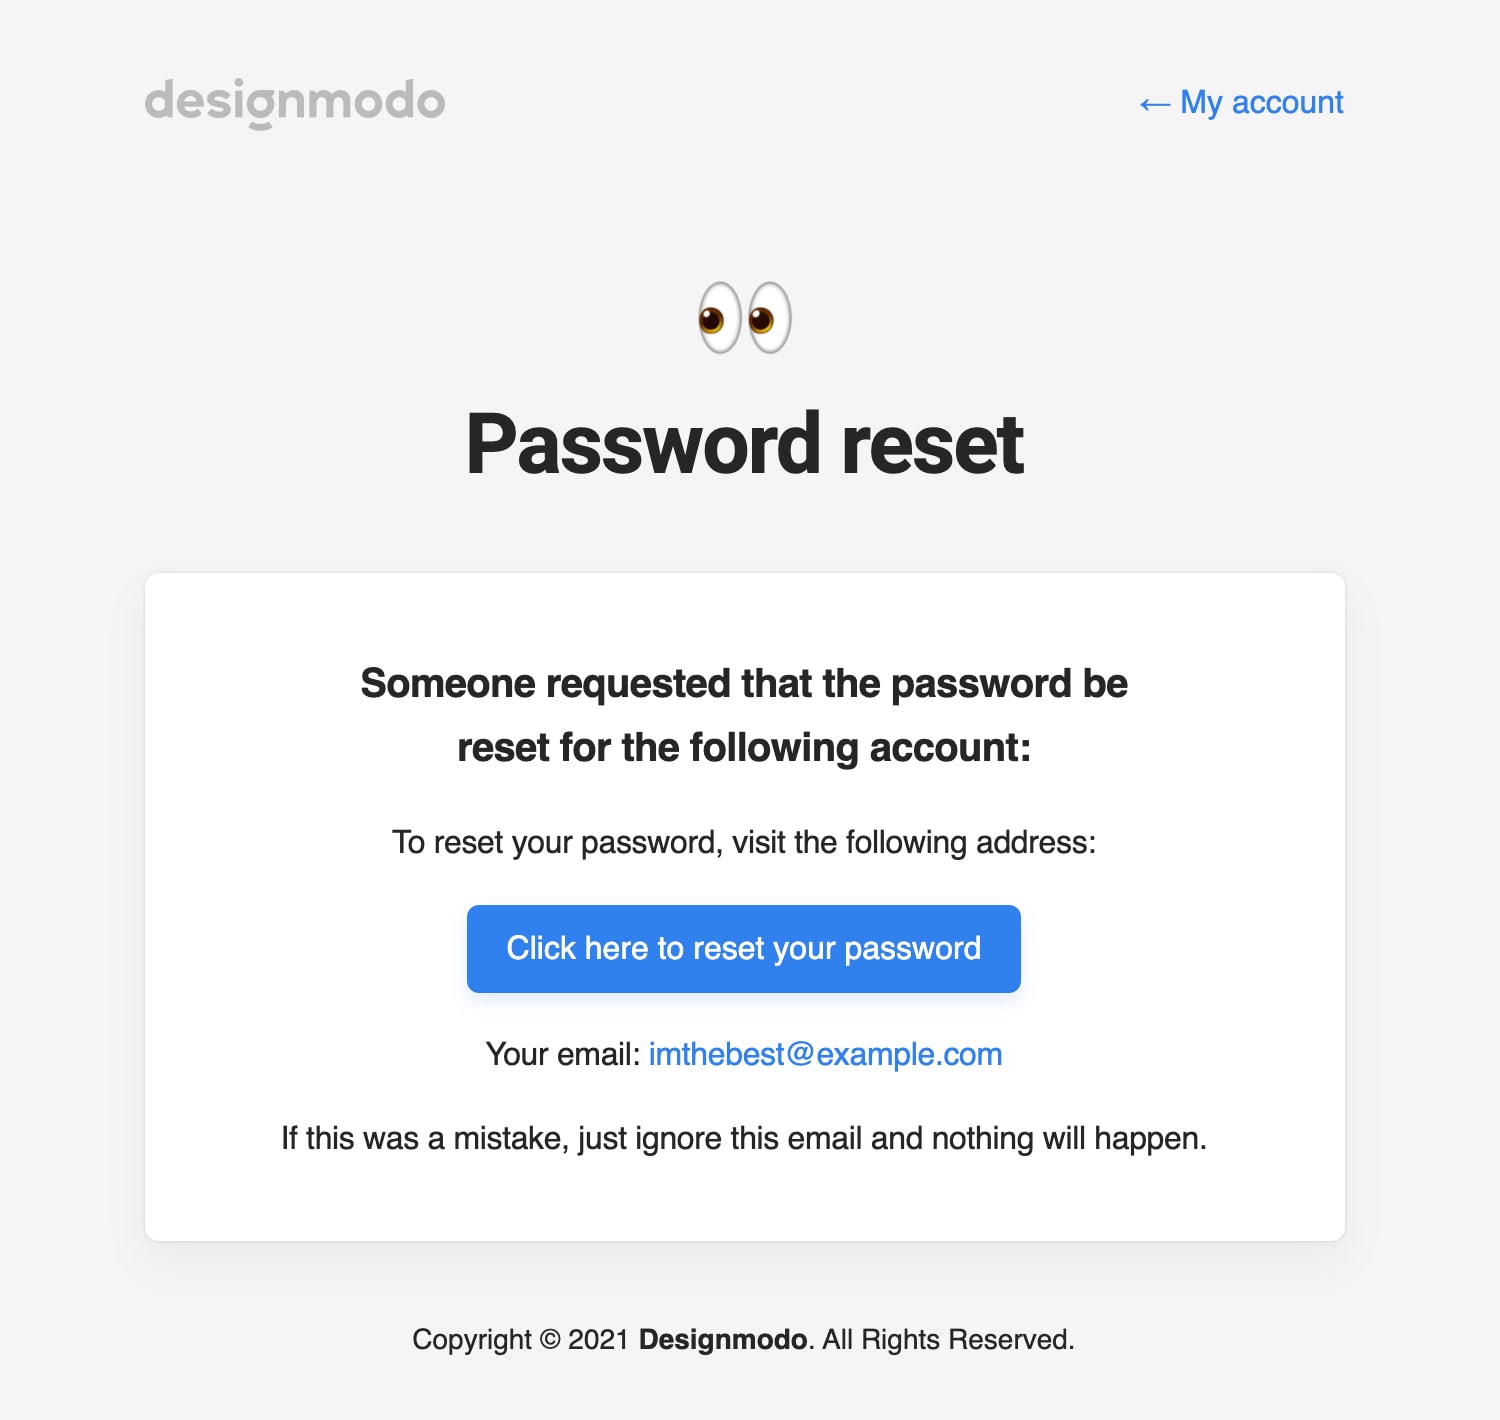 Designmodo password reset